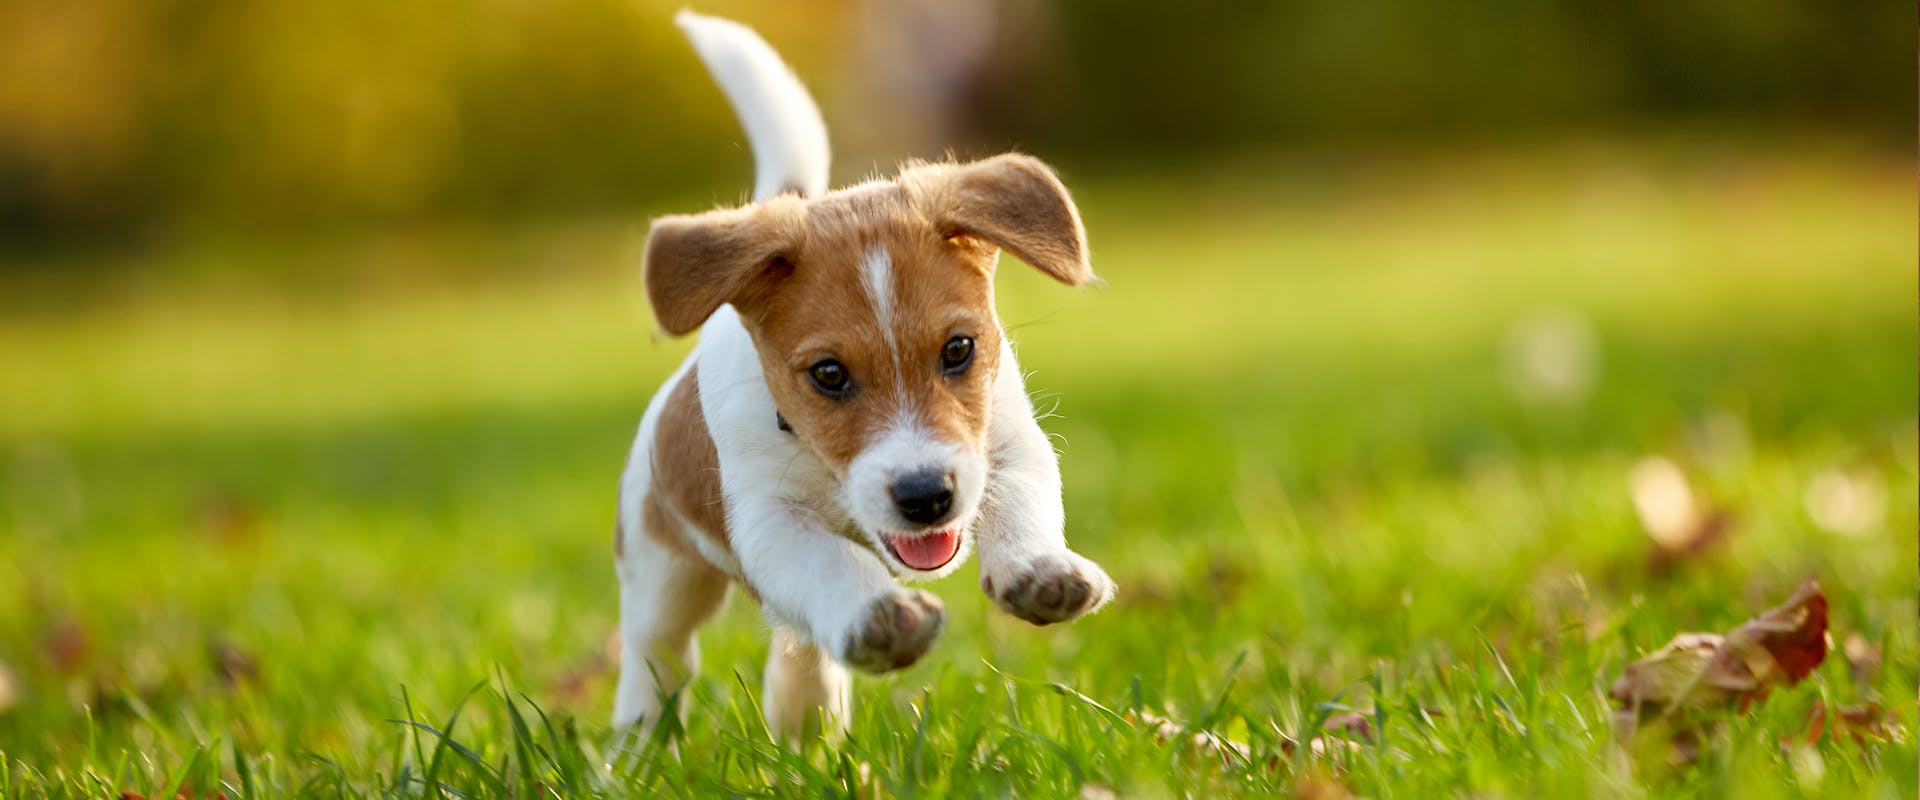 When is a dog not a puppy anymore? A cute puppy running through green grass